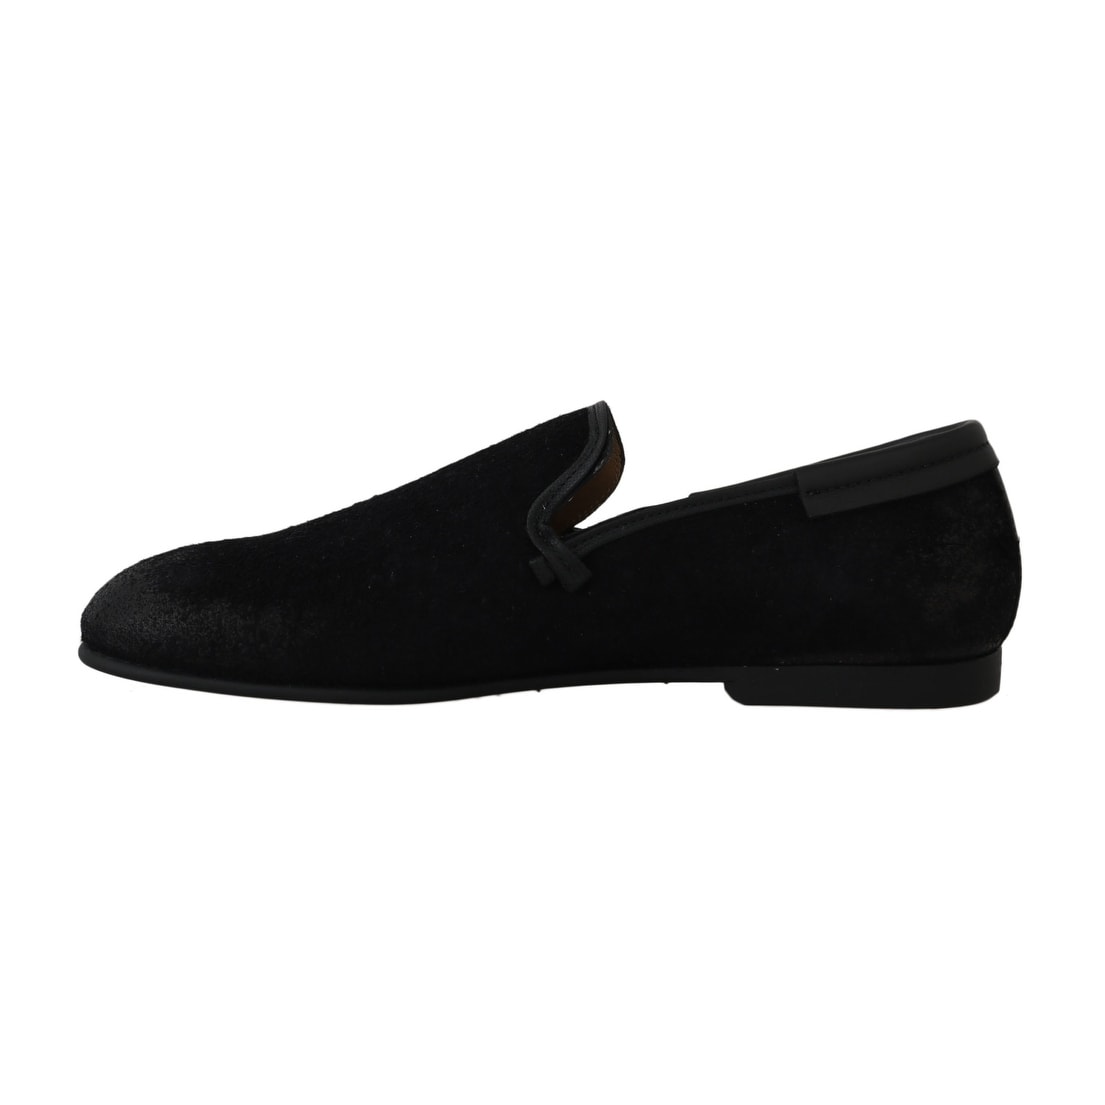 black loafers formal